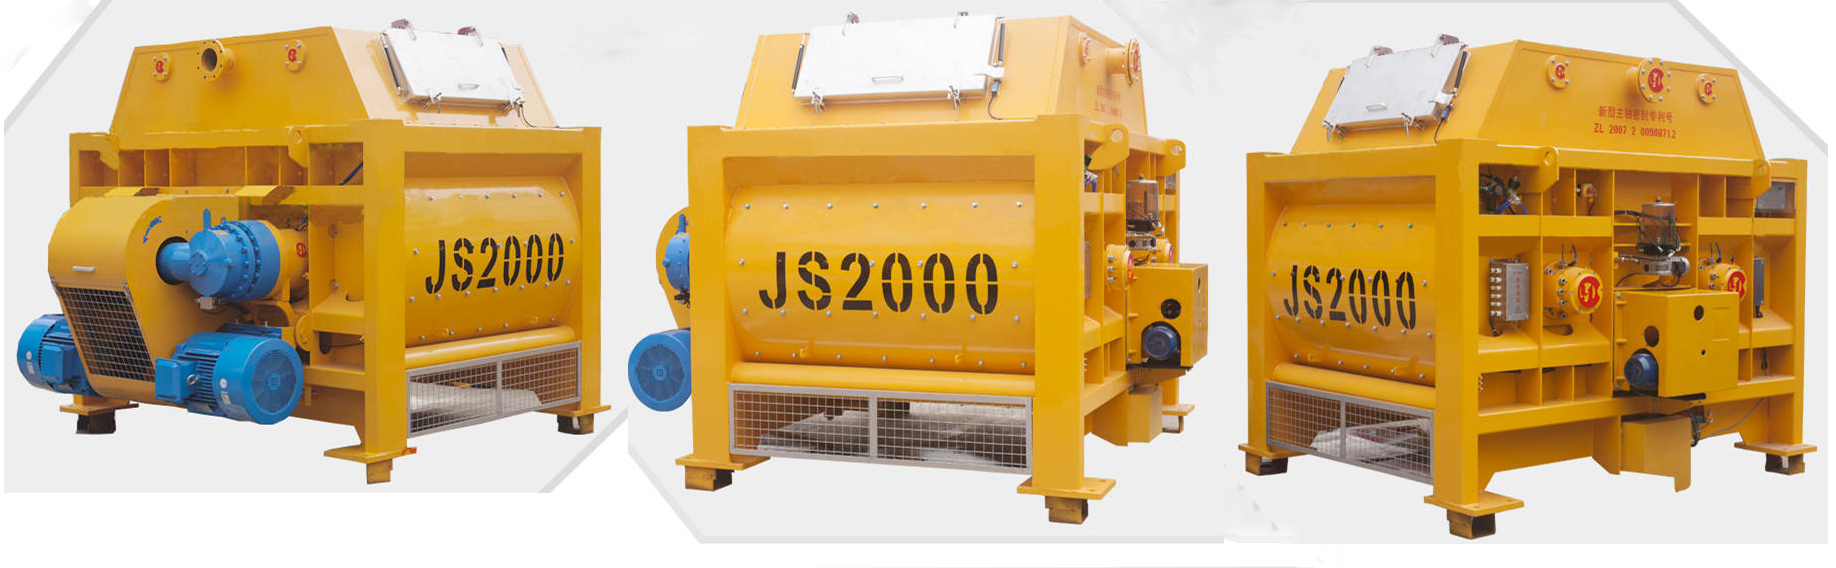 JS2000 concrete mixer